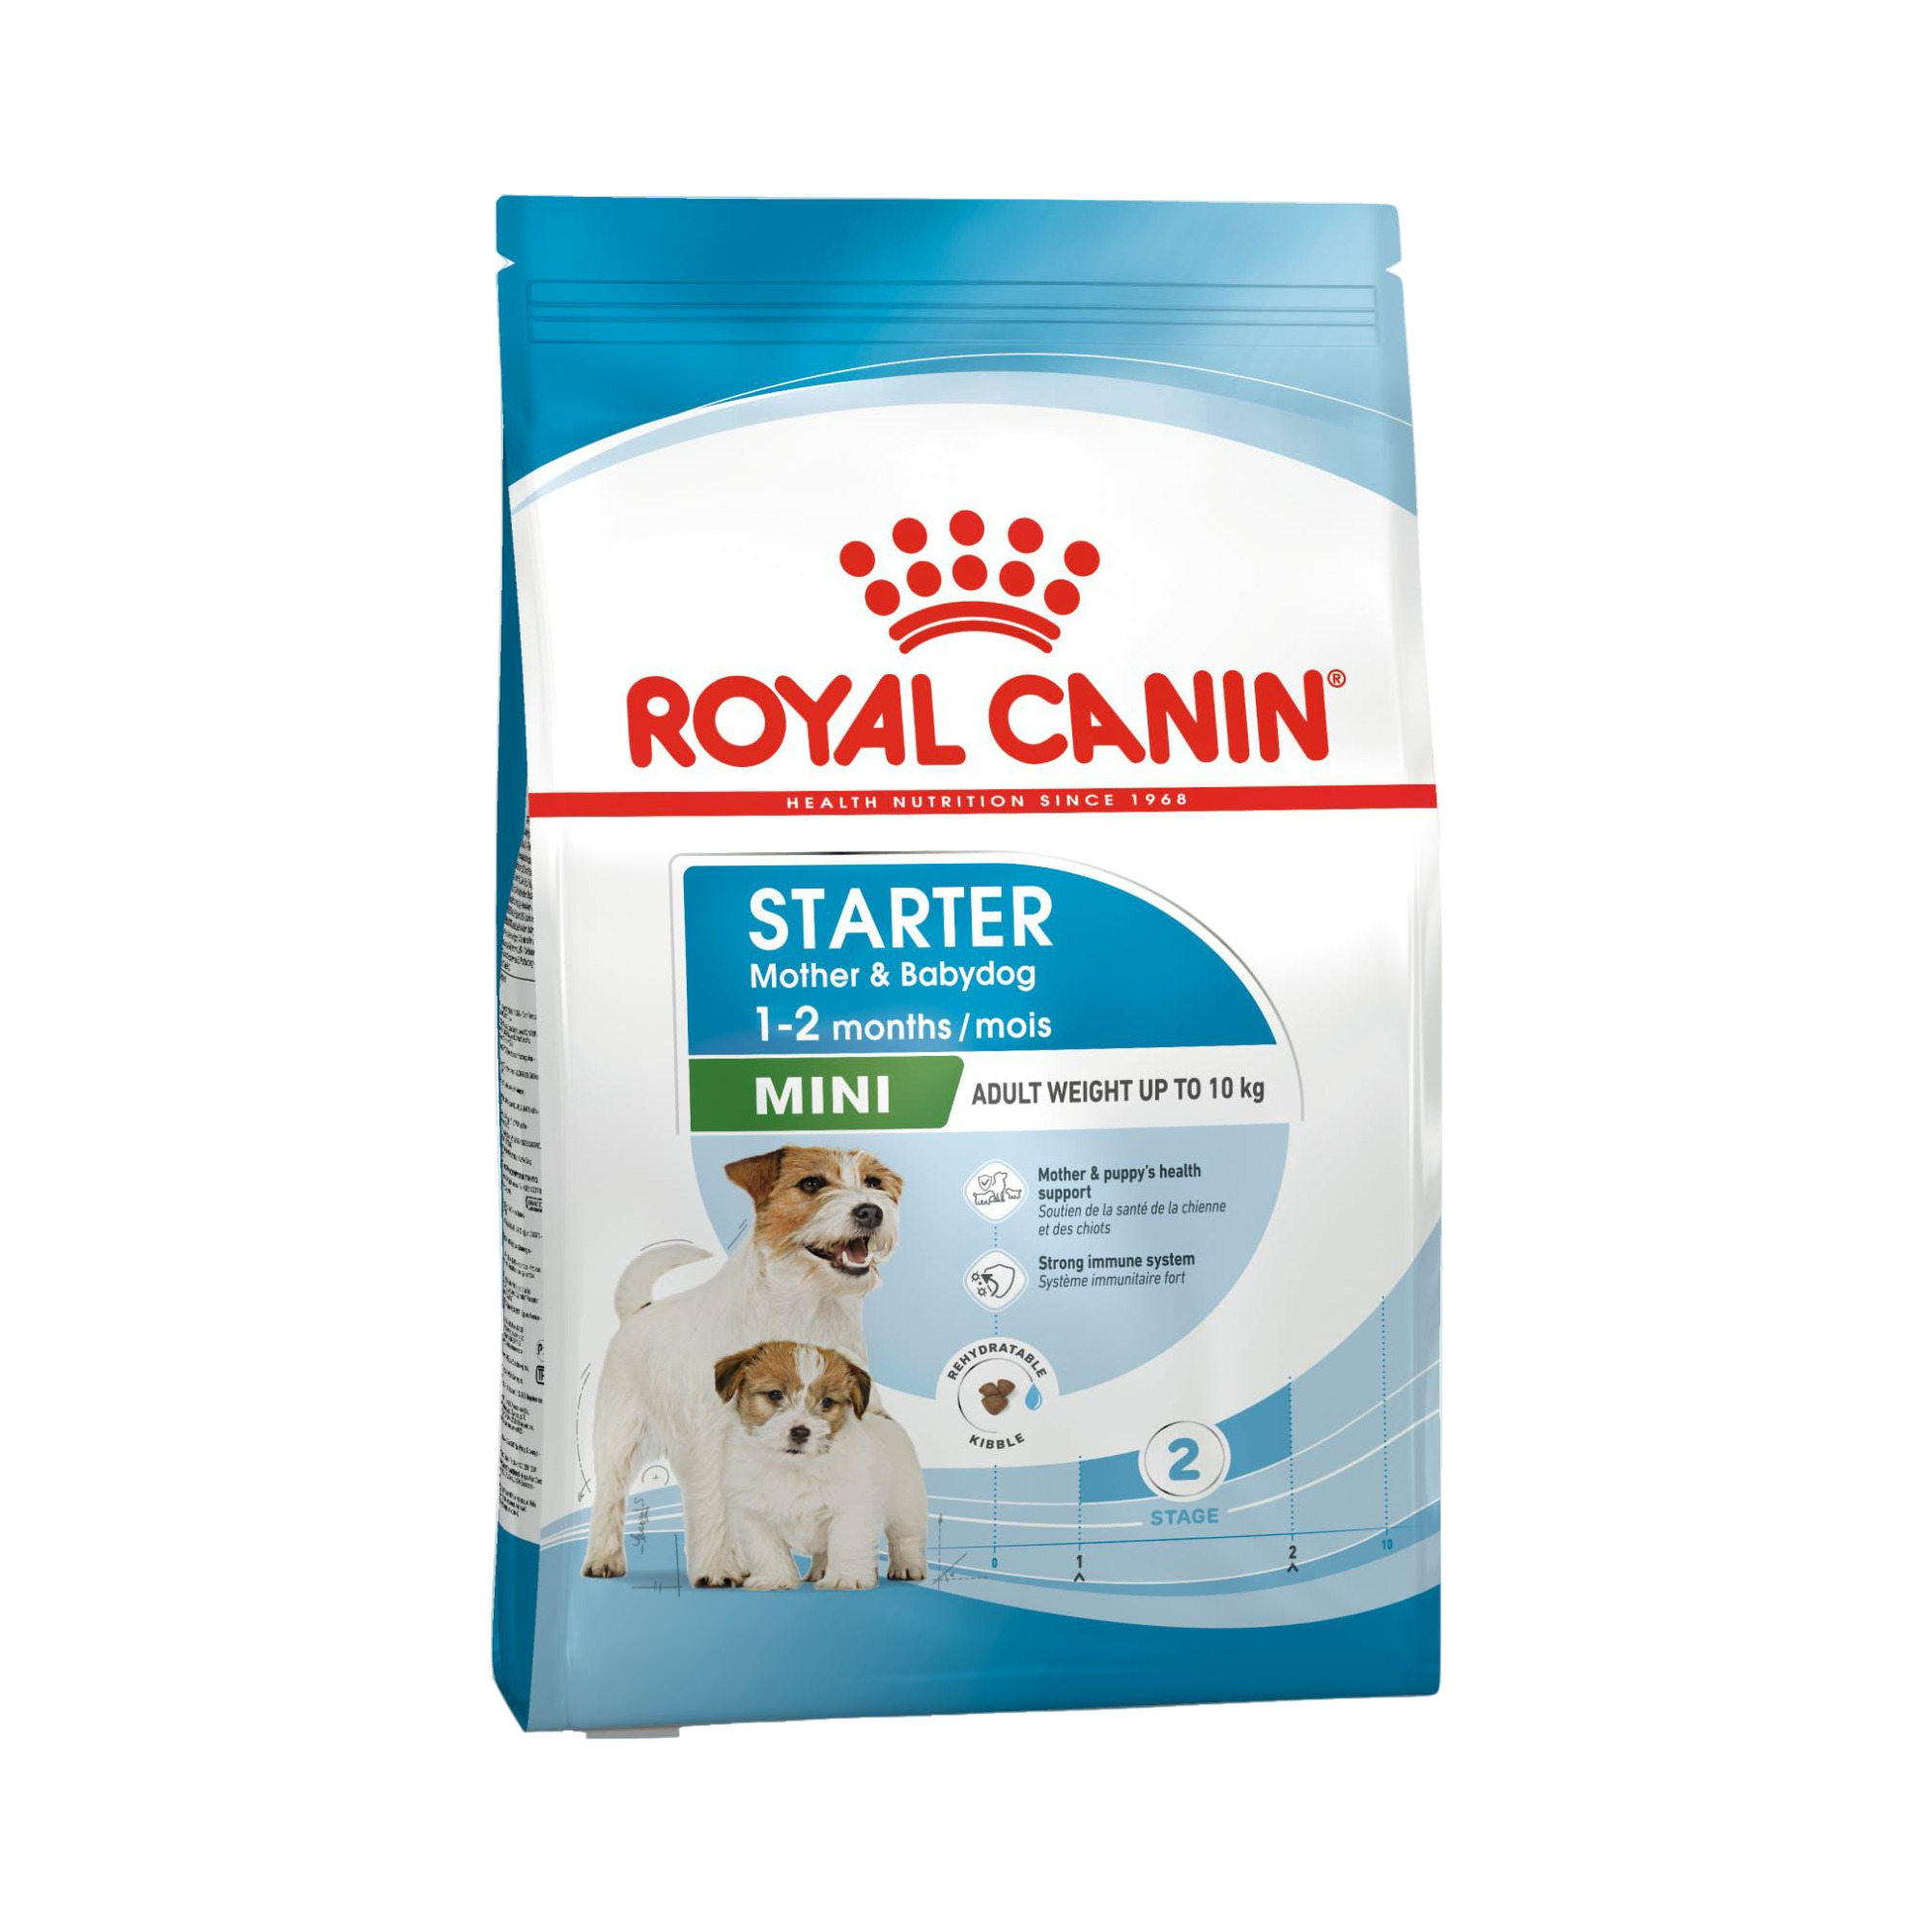 Royal Canin Mini Starter Mother & Babydog - 4kg